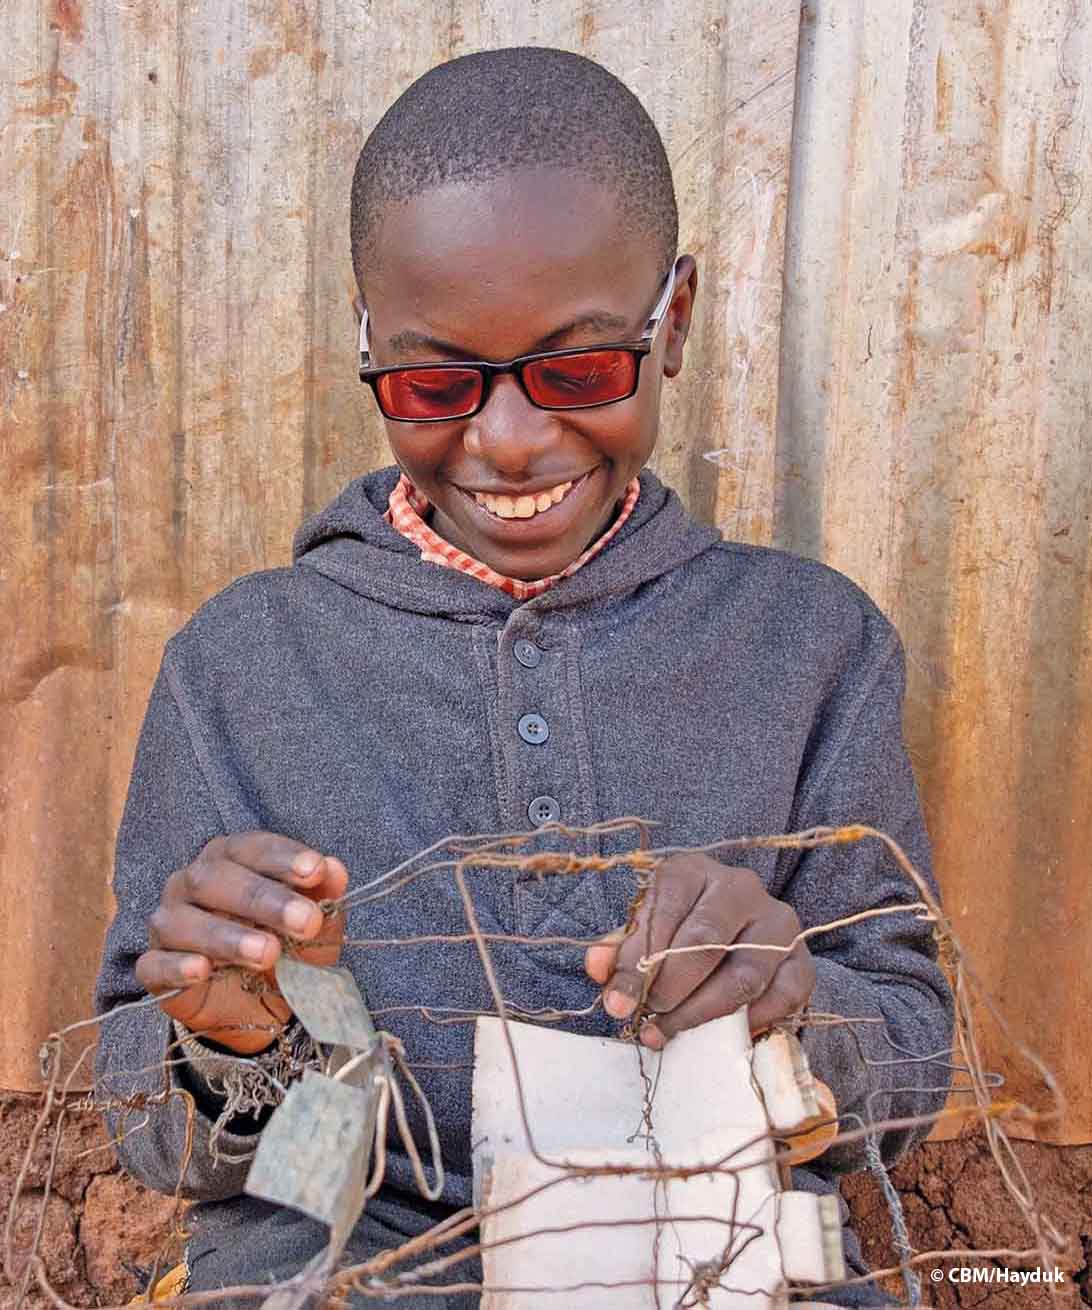 Un jeune Kenyan bricoleur, qui porte des lunettes de soleil filtrant les UV, réalise sur ses genoux une voiture en fil de fer. Les roues arrière sont faites avec des bouchons blancs de bouteilles en PET.